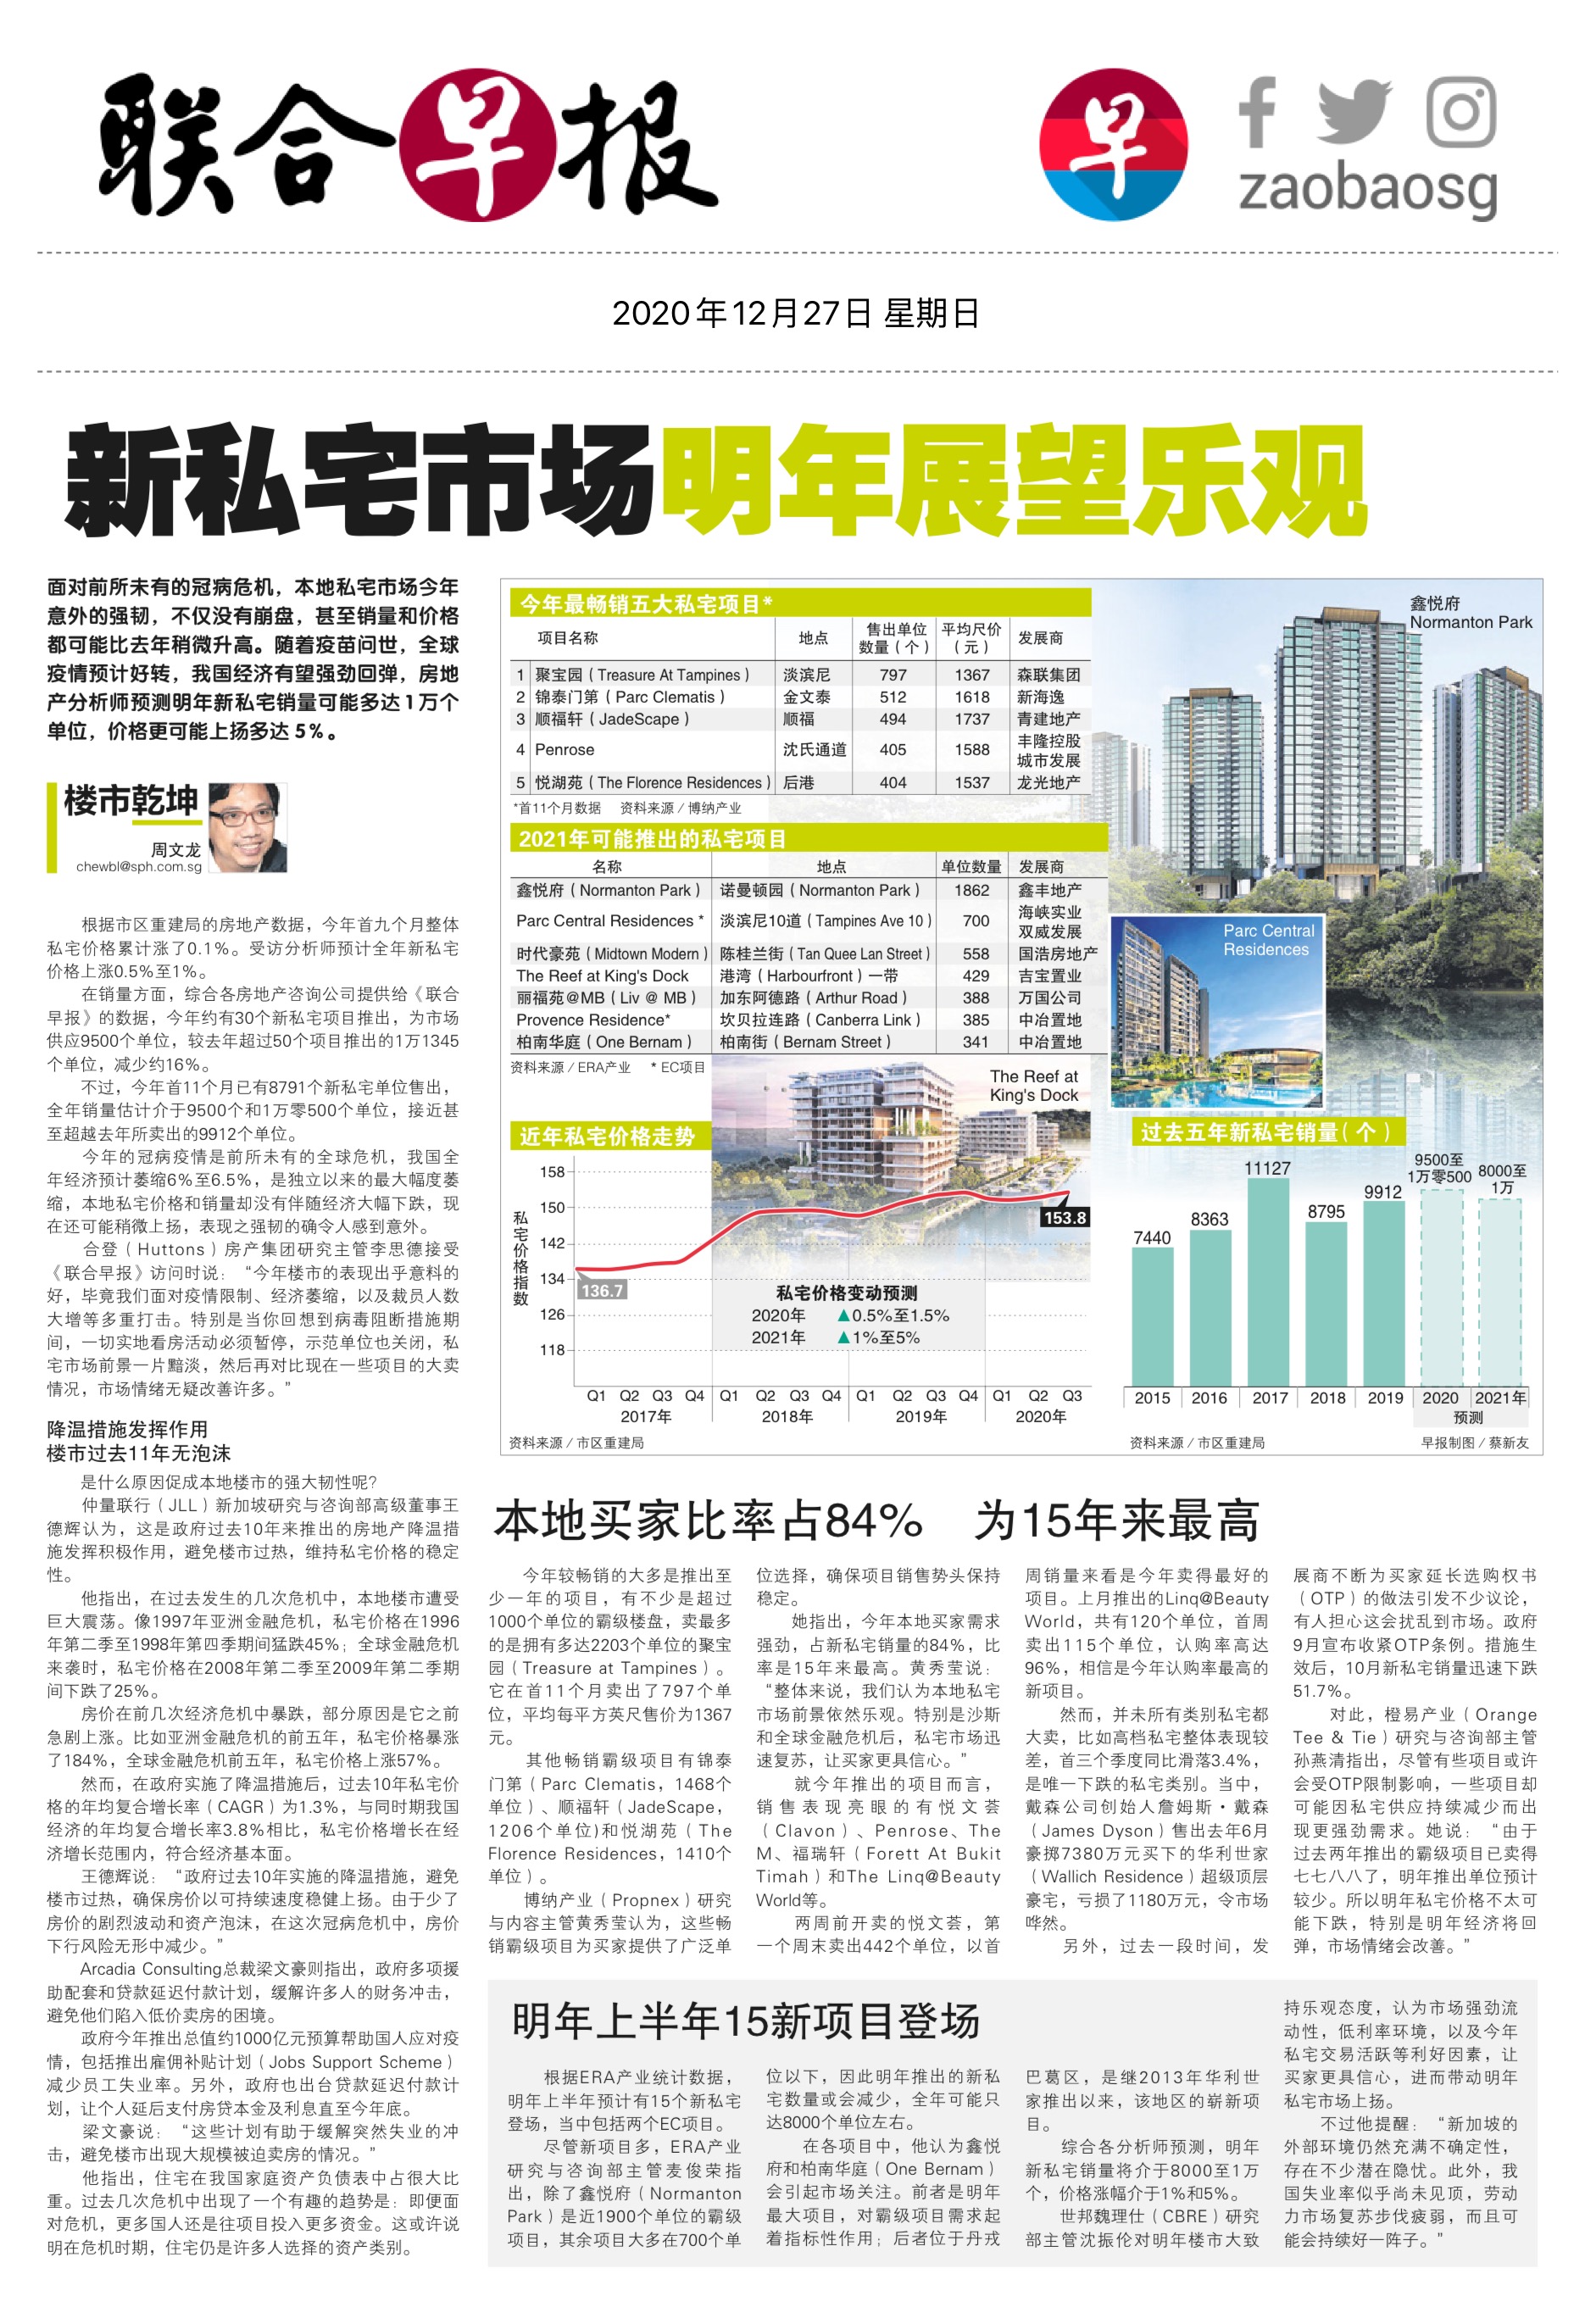 新加坡房价2020年4季度涨2.1% 创两年最大涨幅